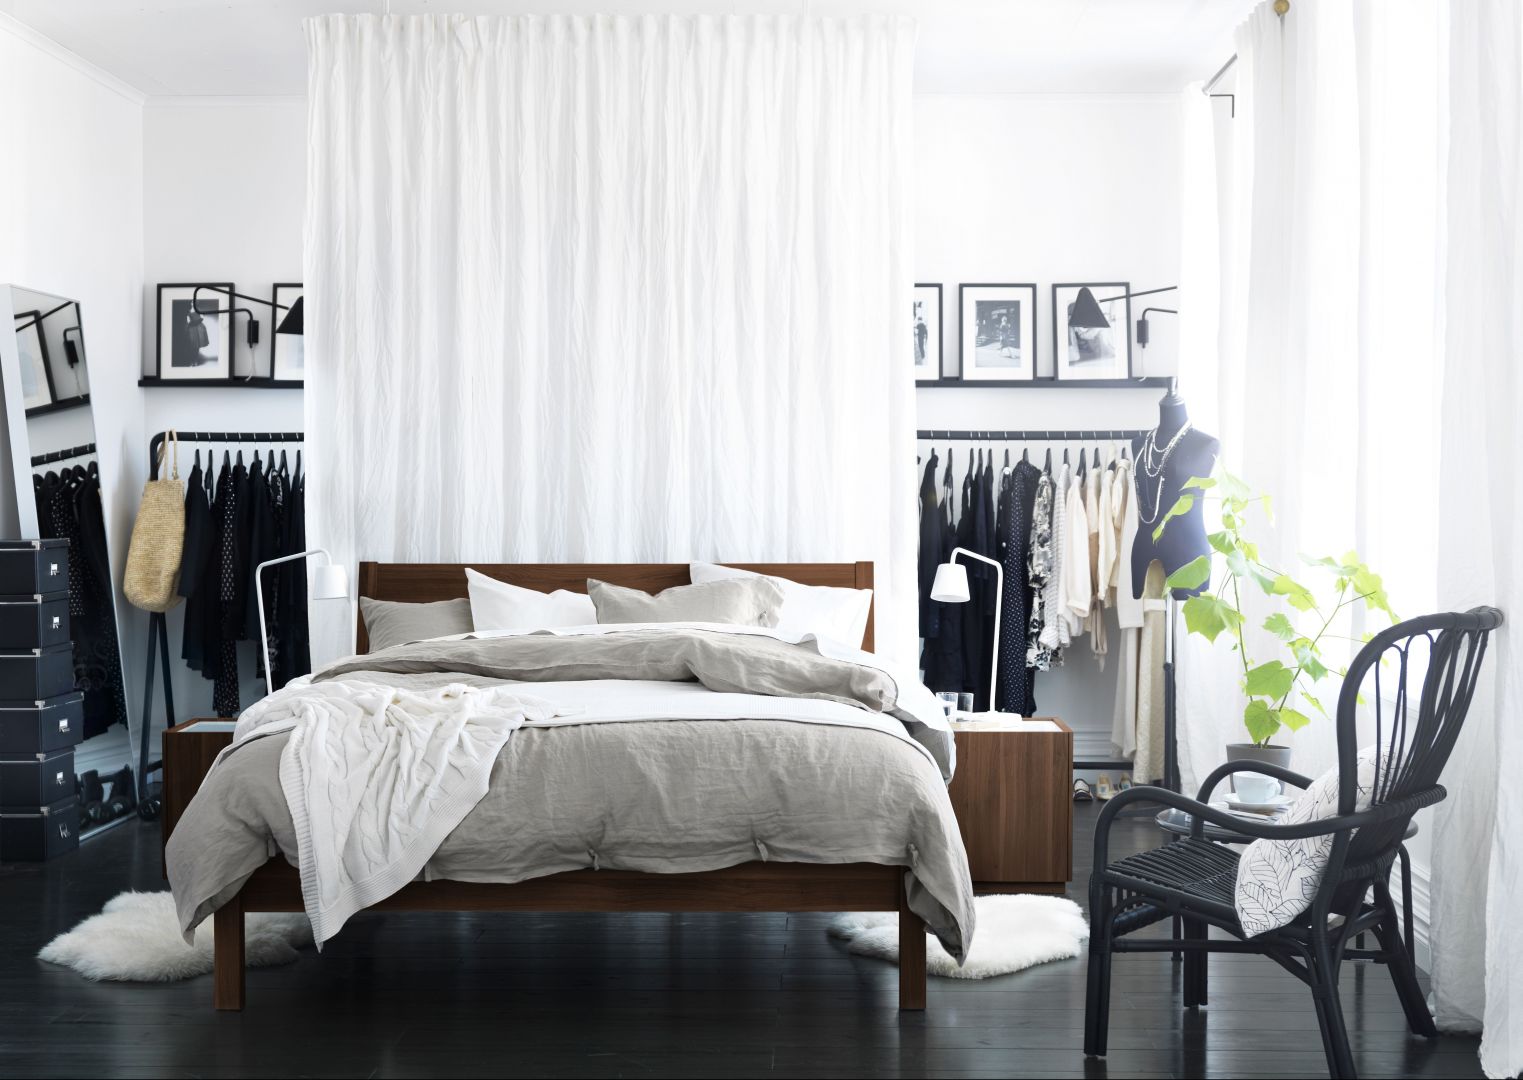 Łóżko wykonane w ciemnym drewnie idealnie współgra z czarno białym pomieszczeniem, produkt IKEA
Fot. IKEA